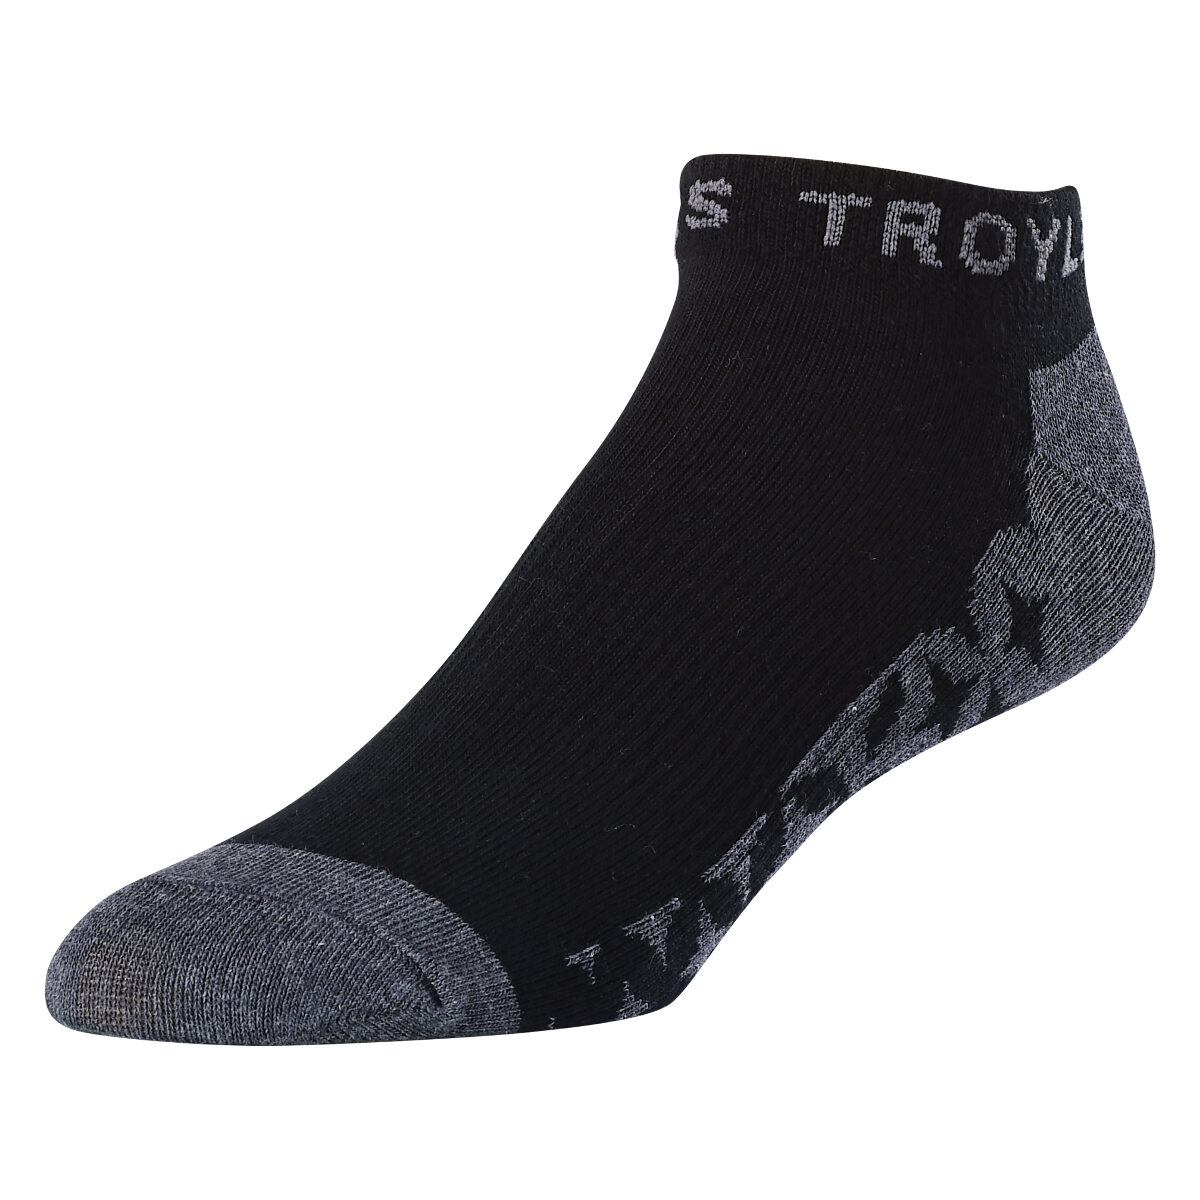 Troy Lee Designs Socken Starburst Ankle Schwarz, 3er Pack